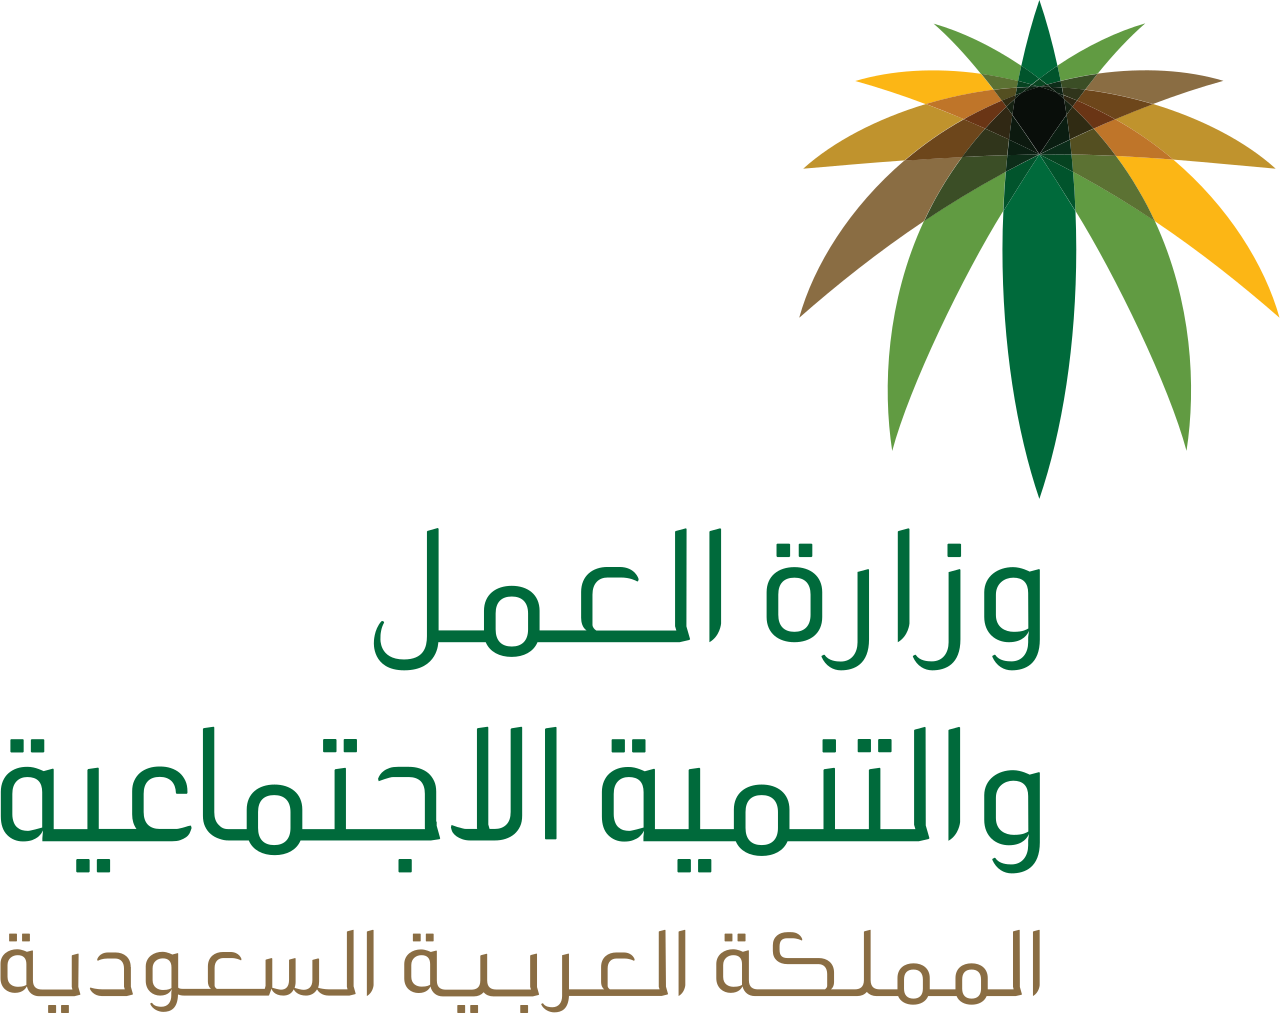 صور شعار وزارة العمل والتنمية الإجتماعية